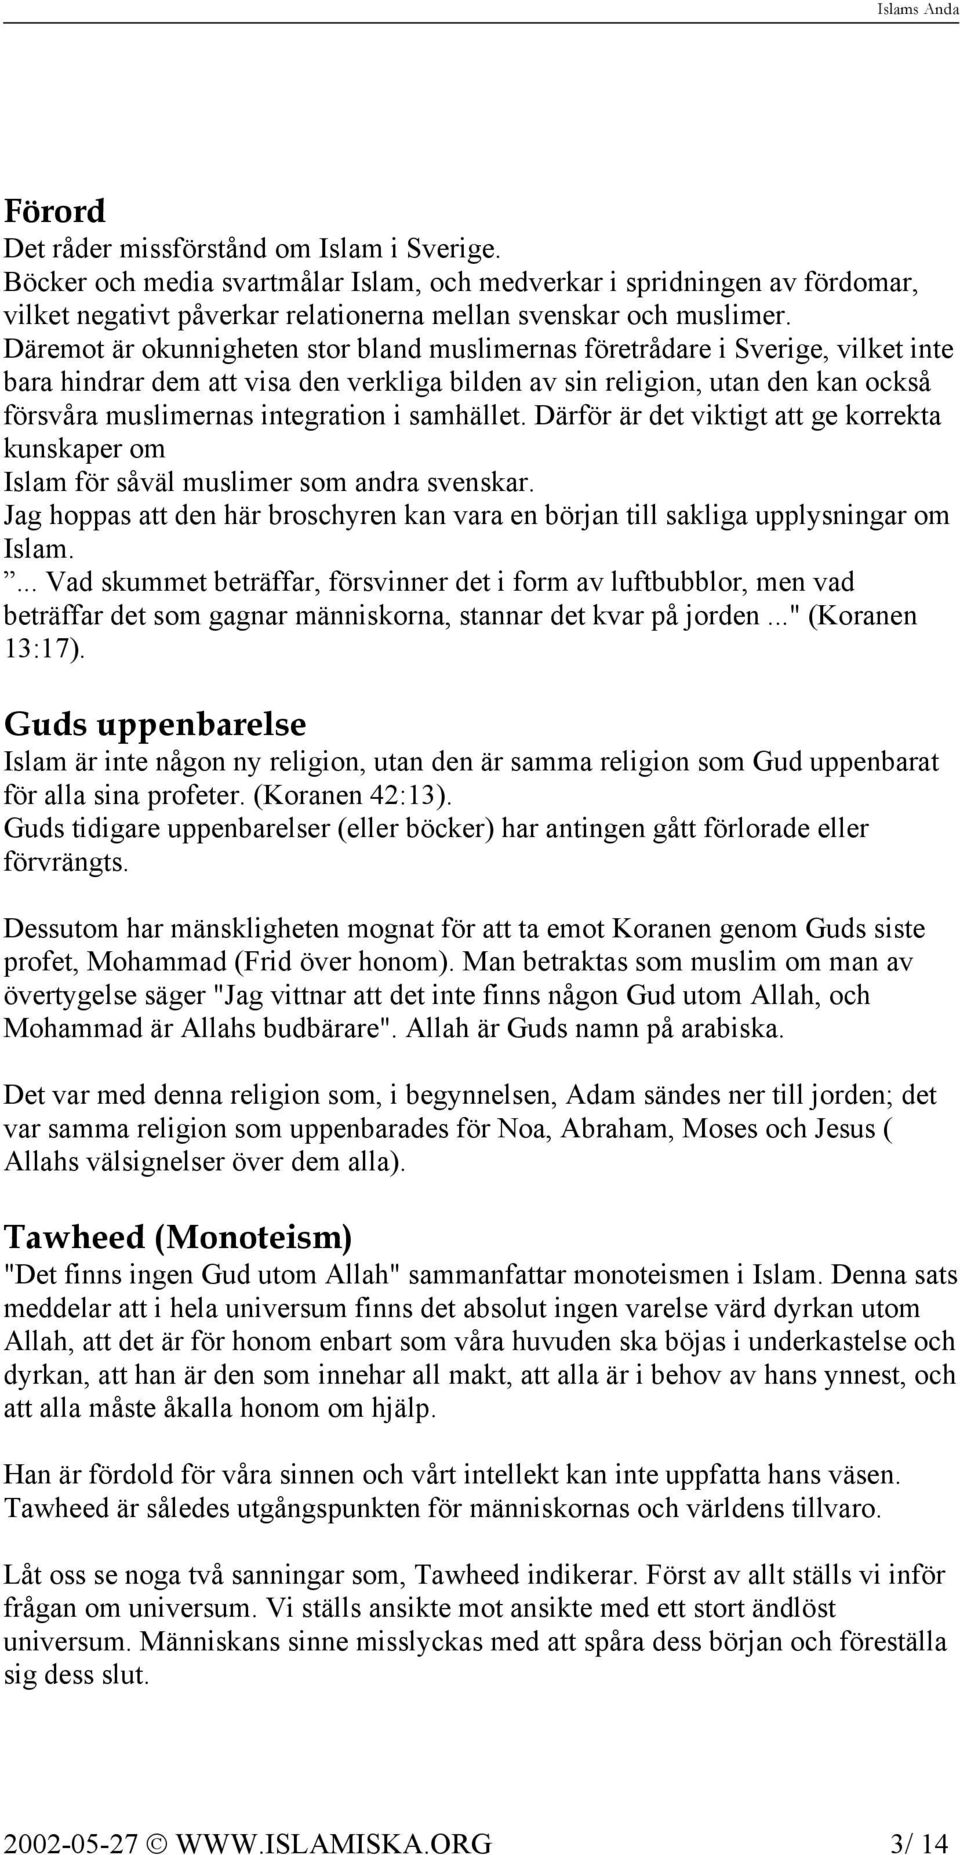 samhället. Därför är det viktigt att ge korrekta kunskaper om Islam för såväl muslimer som andra svenskar. Jag hoppas att den här broschyren kan vara en början till sakliga upplysningar om Islam.